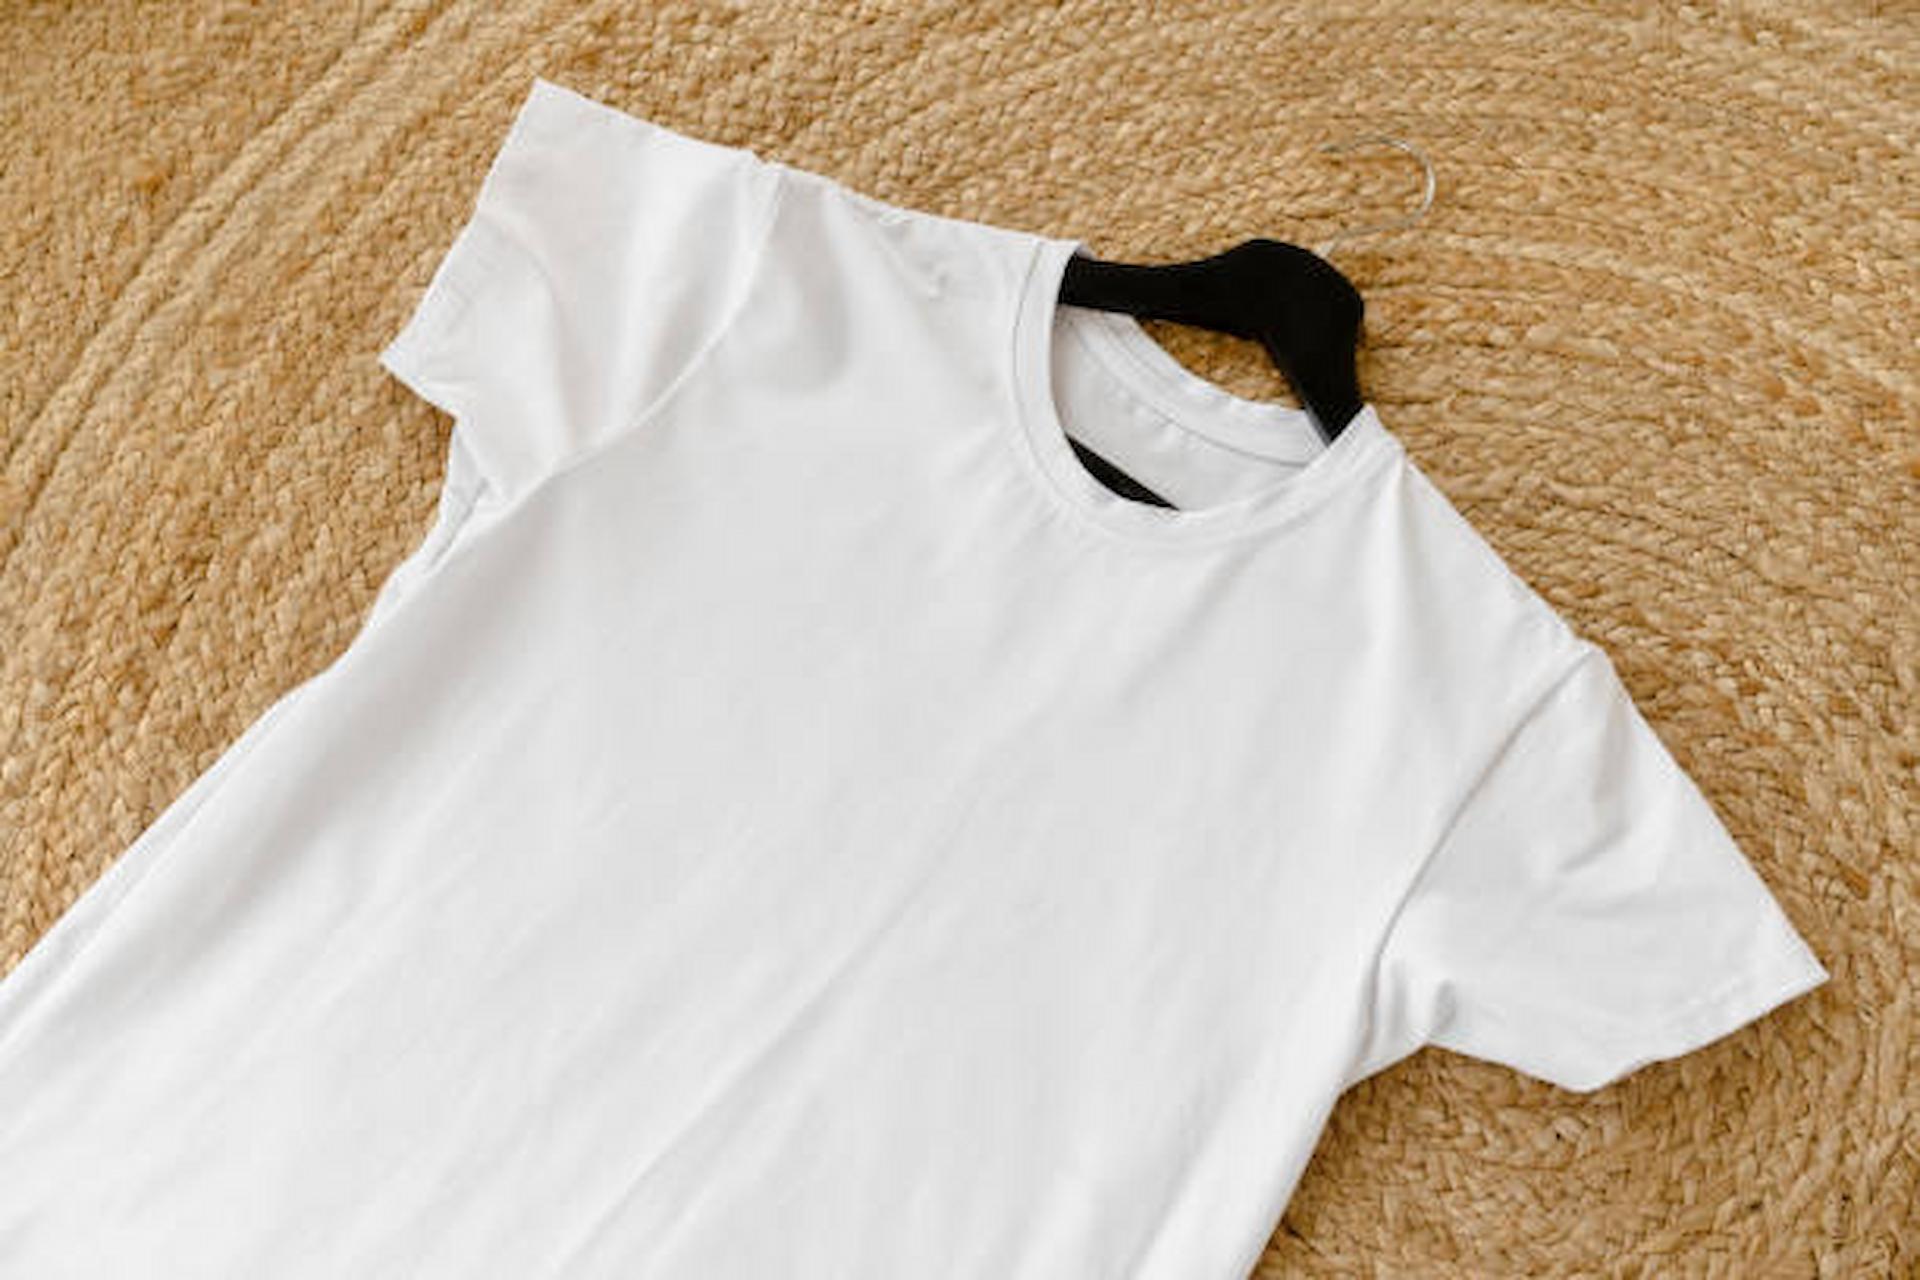 Plain white t-shirts